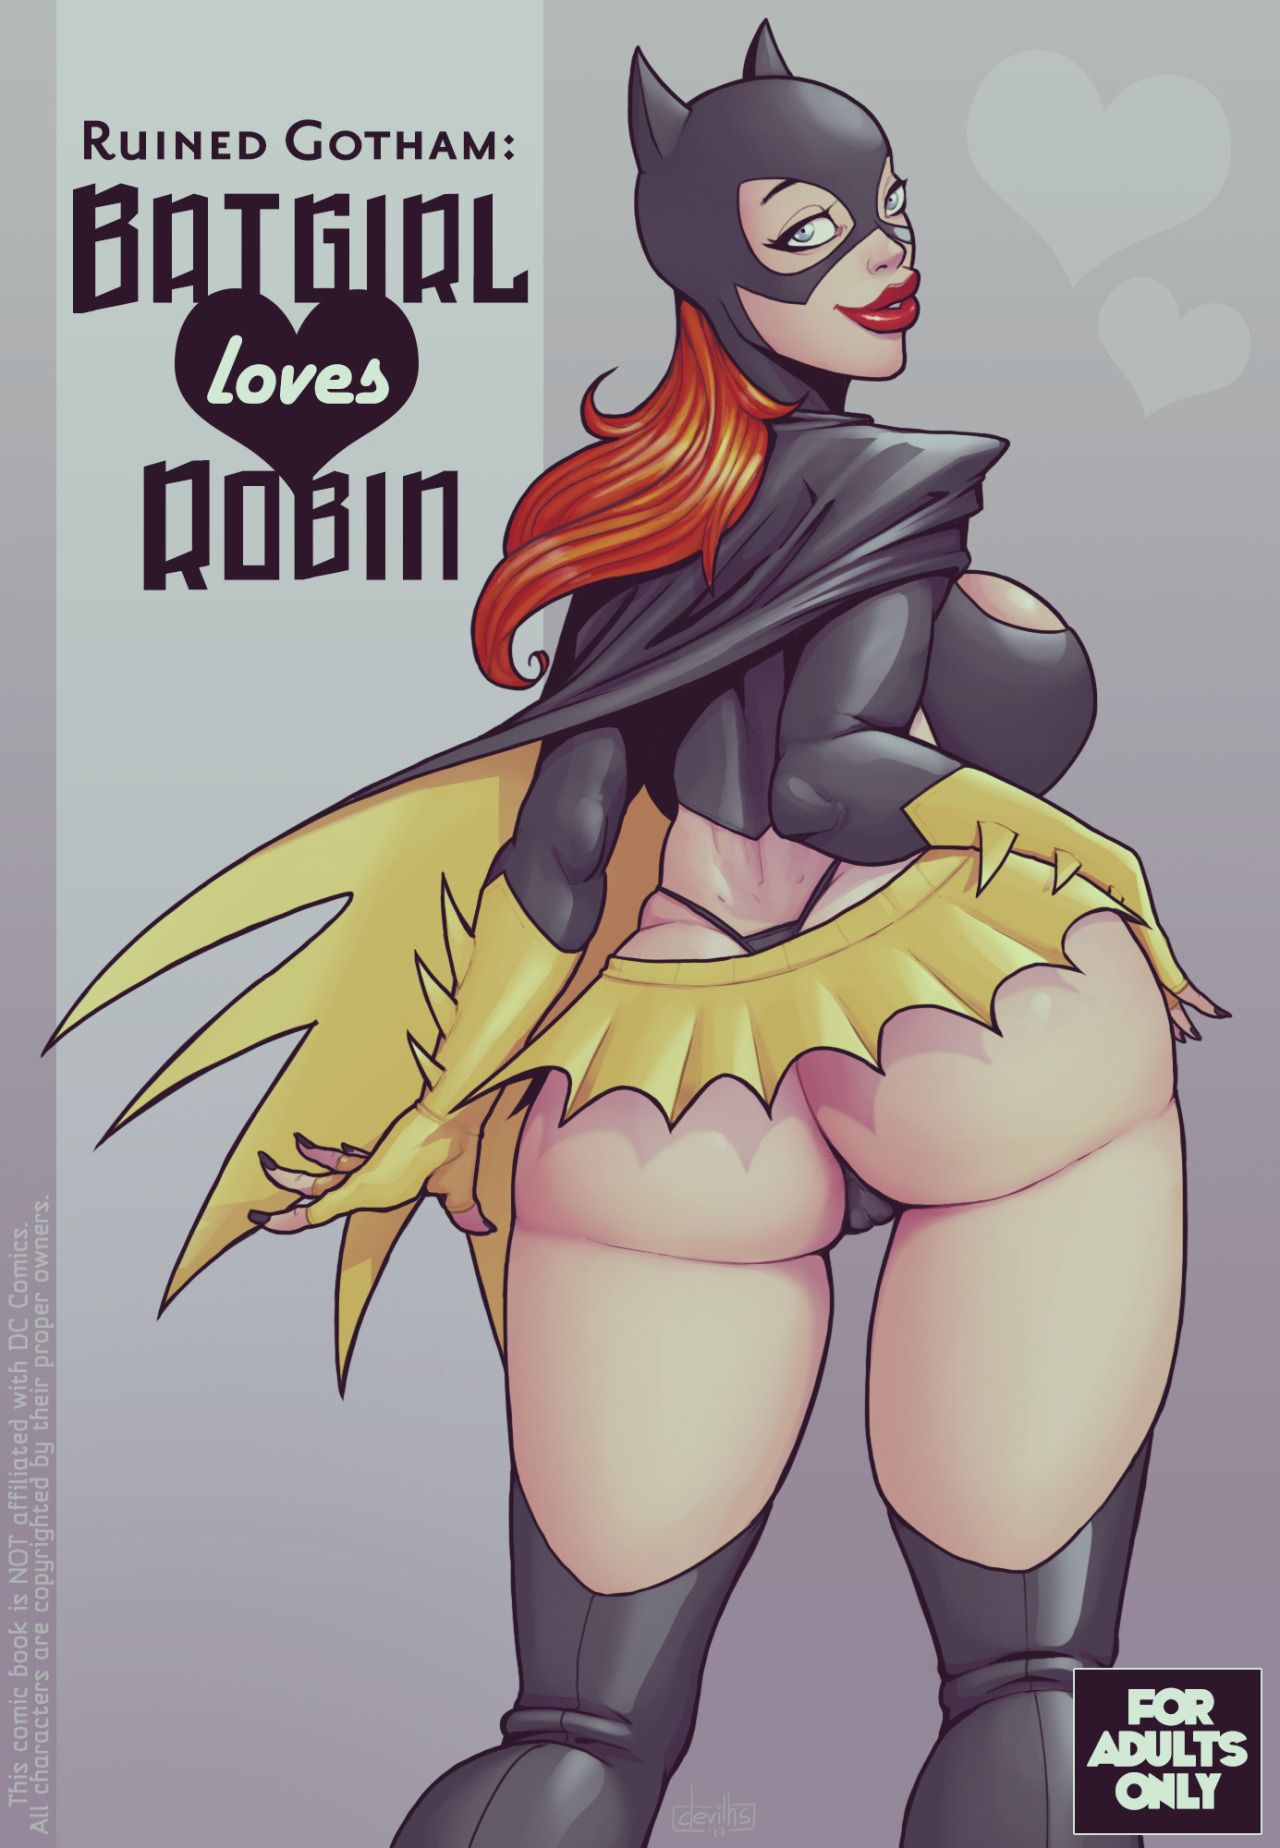 [DevilHS] Ruined Gotham: Batgirl loves Robin (ongoing) 1